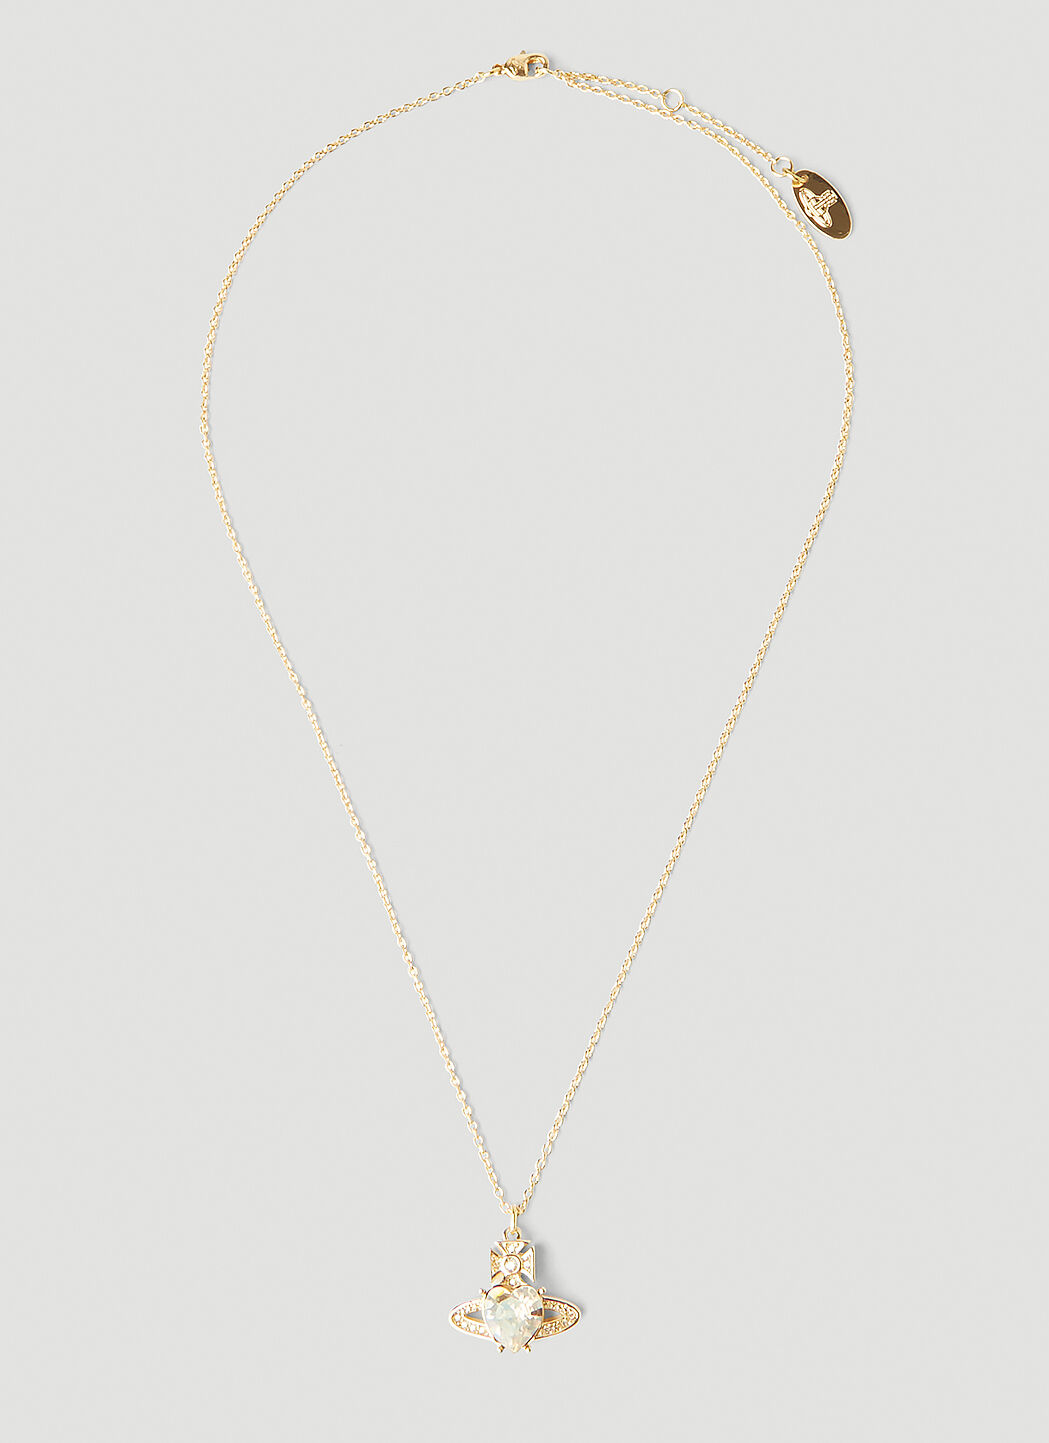 Vivienne Westwood Ismene embellished pendant necklace | MILANSTYLE.COM